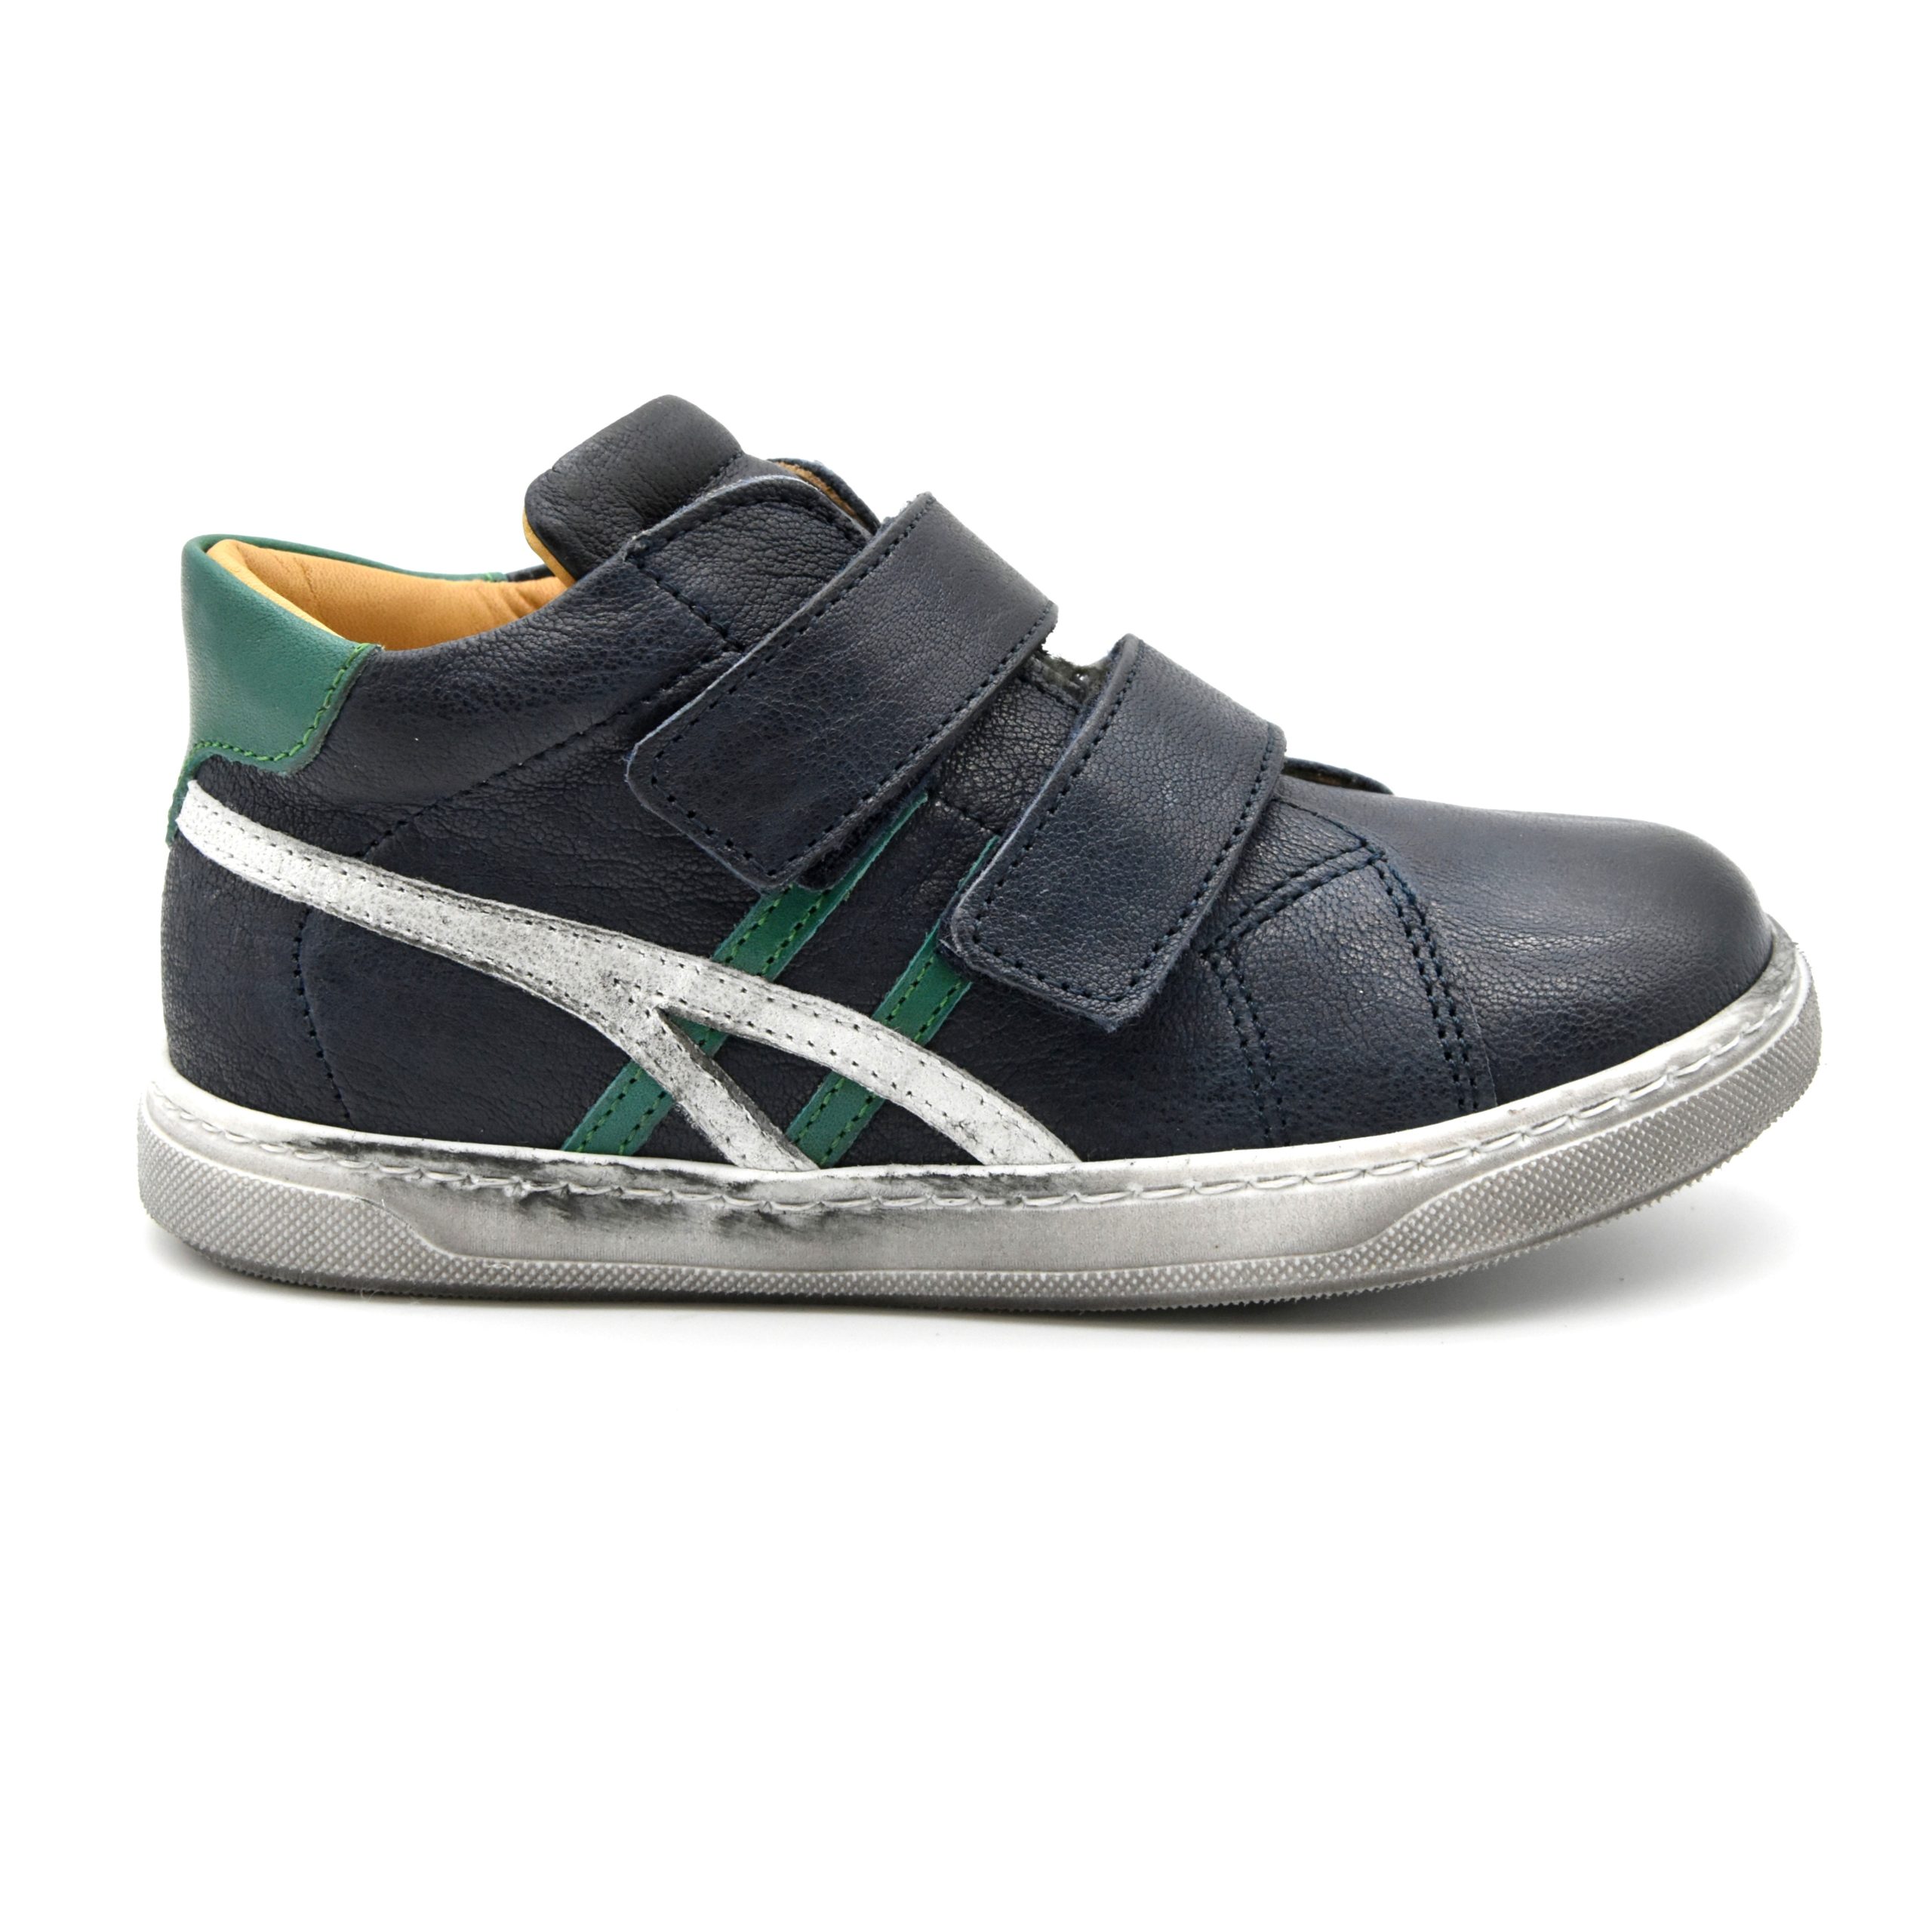 Zecchino D'oro, sneakers, velcro, pelle, made in Italy, blu scuro, verde, profilo